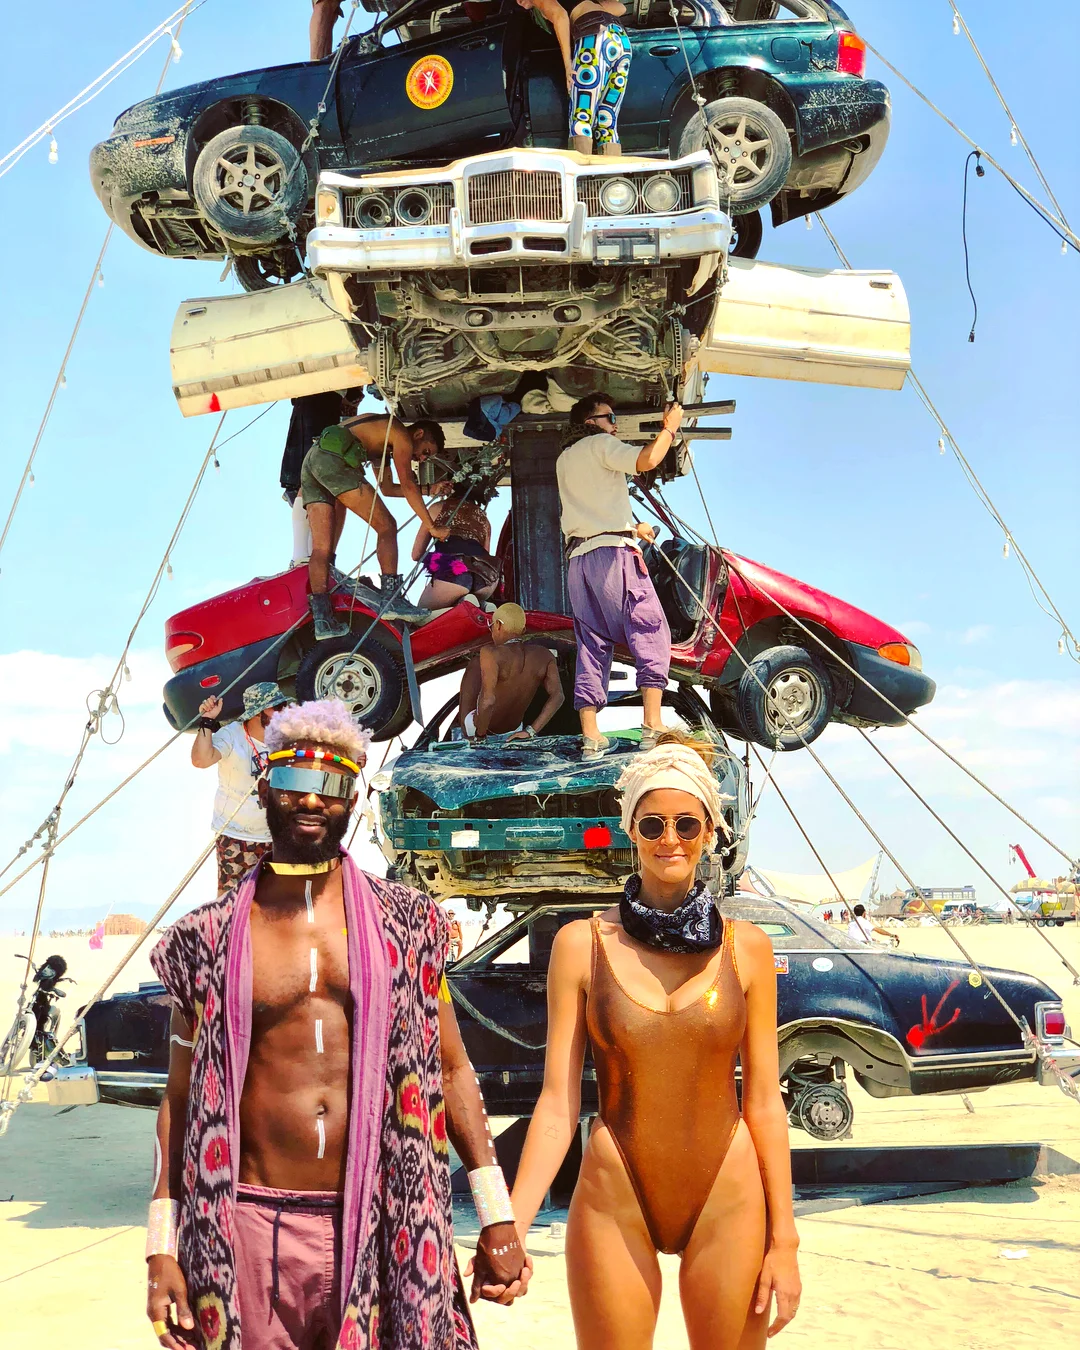 Полуголые тела, безумные костюмы и невероятные инсталляции фестиваля Burning Man-2018 - фото 400785